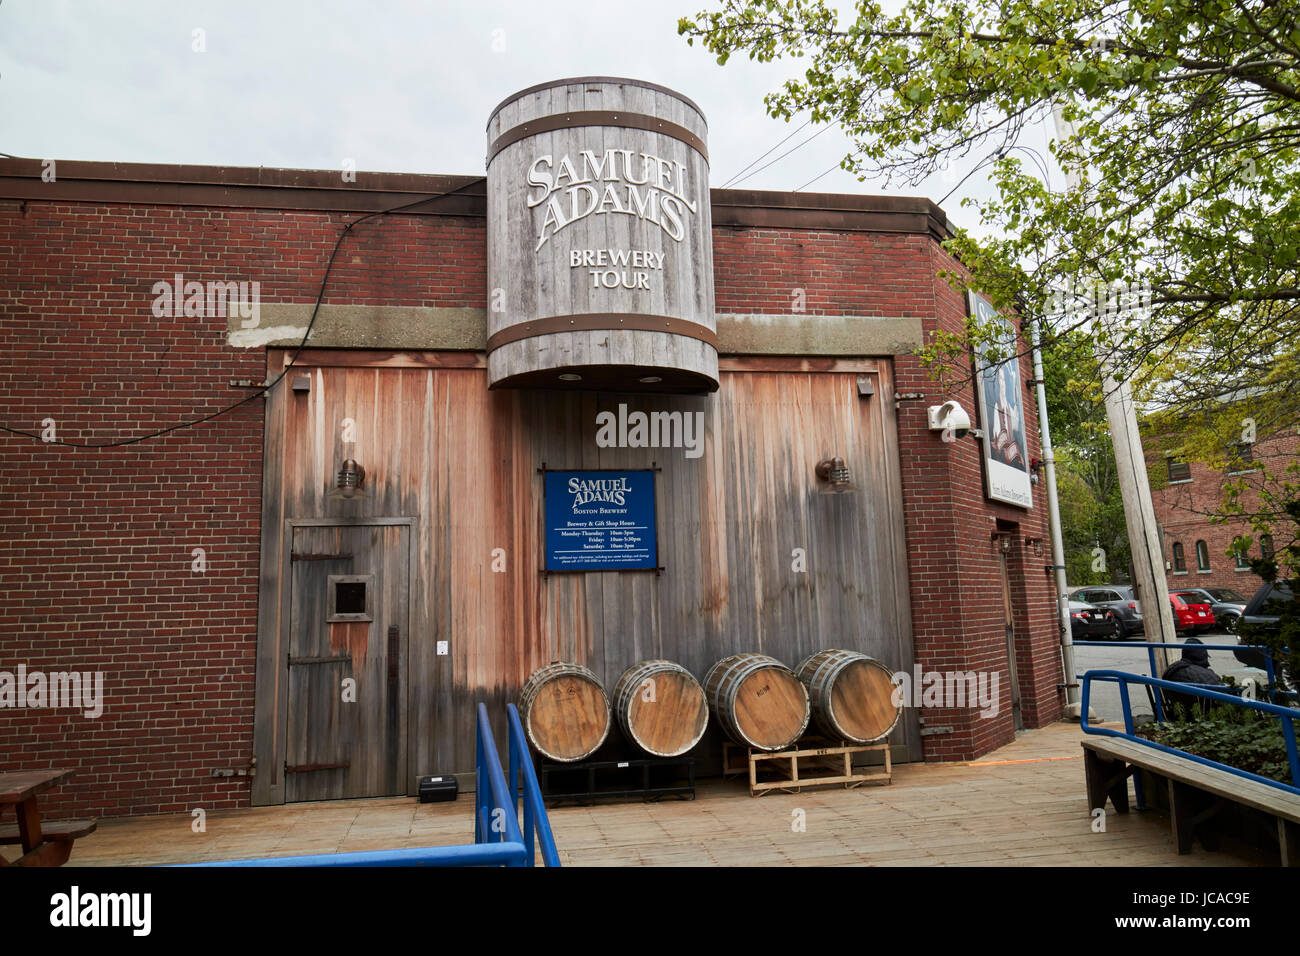 samuel adams brewery tour Boston USA Stock Photo